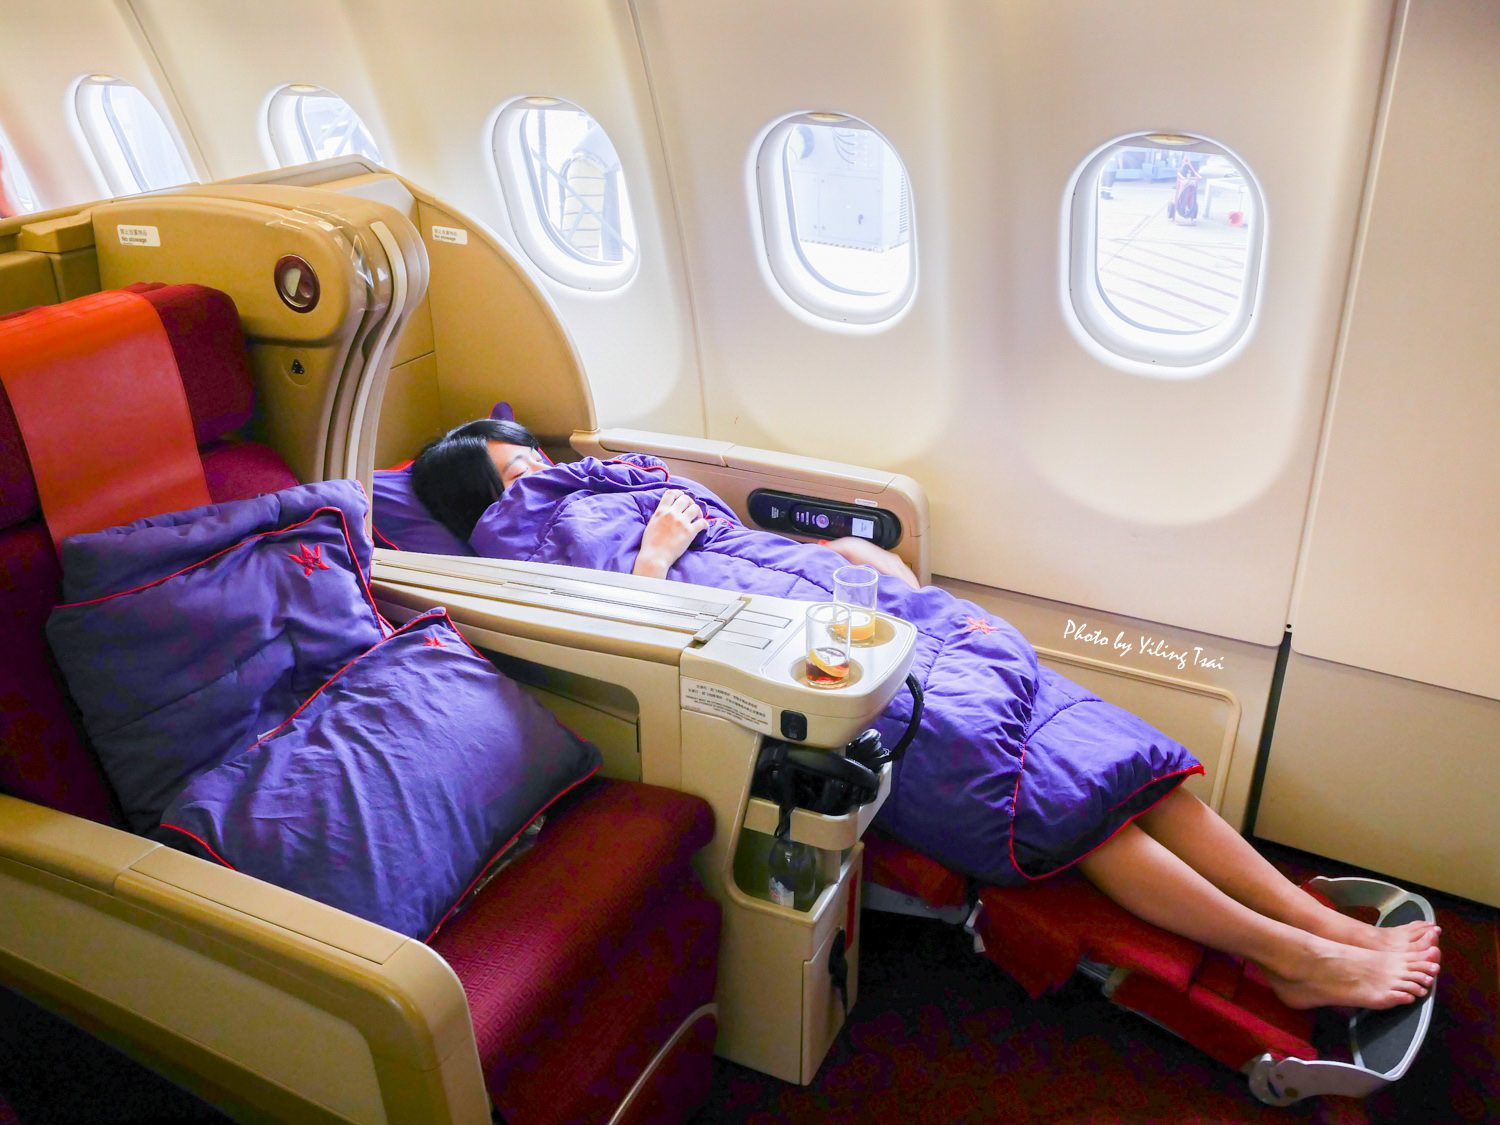 香港航空商務艙 香港轉機舊金山航線 180度座椅超舒適座椅